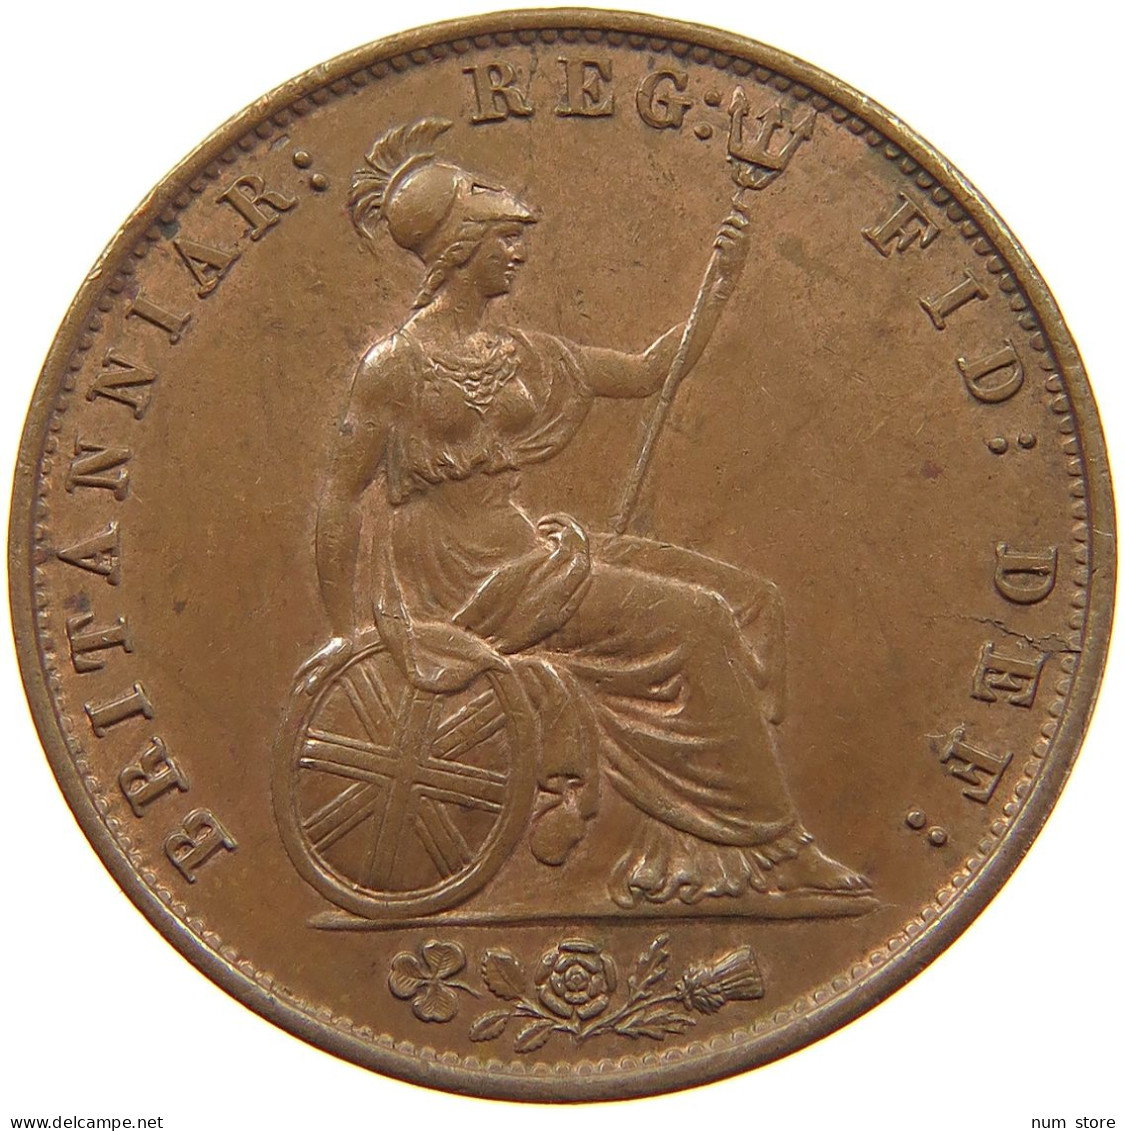 GREAT BRITAIN HALF PENNY 1858 Victoria 1837-1901 #t118 0219 - C. 1/2 Penny